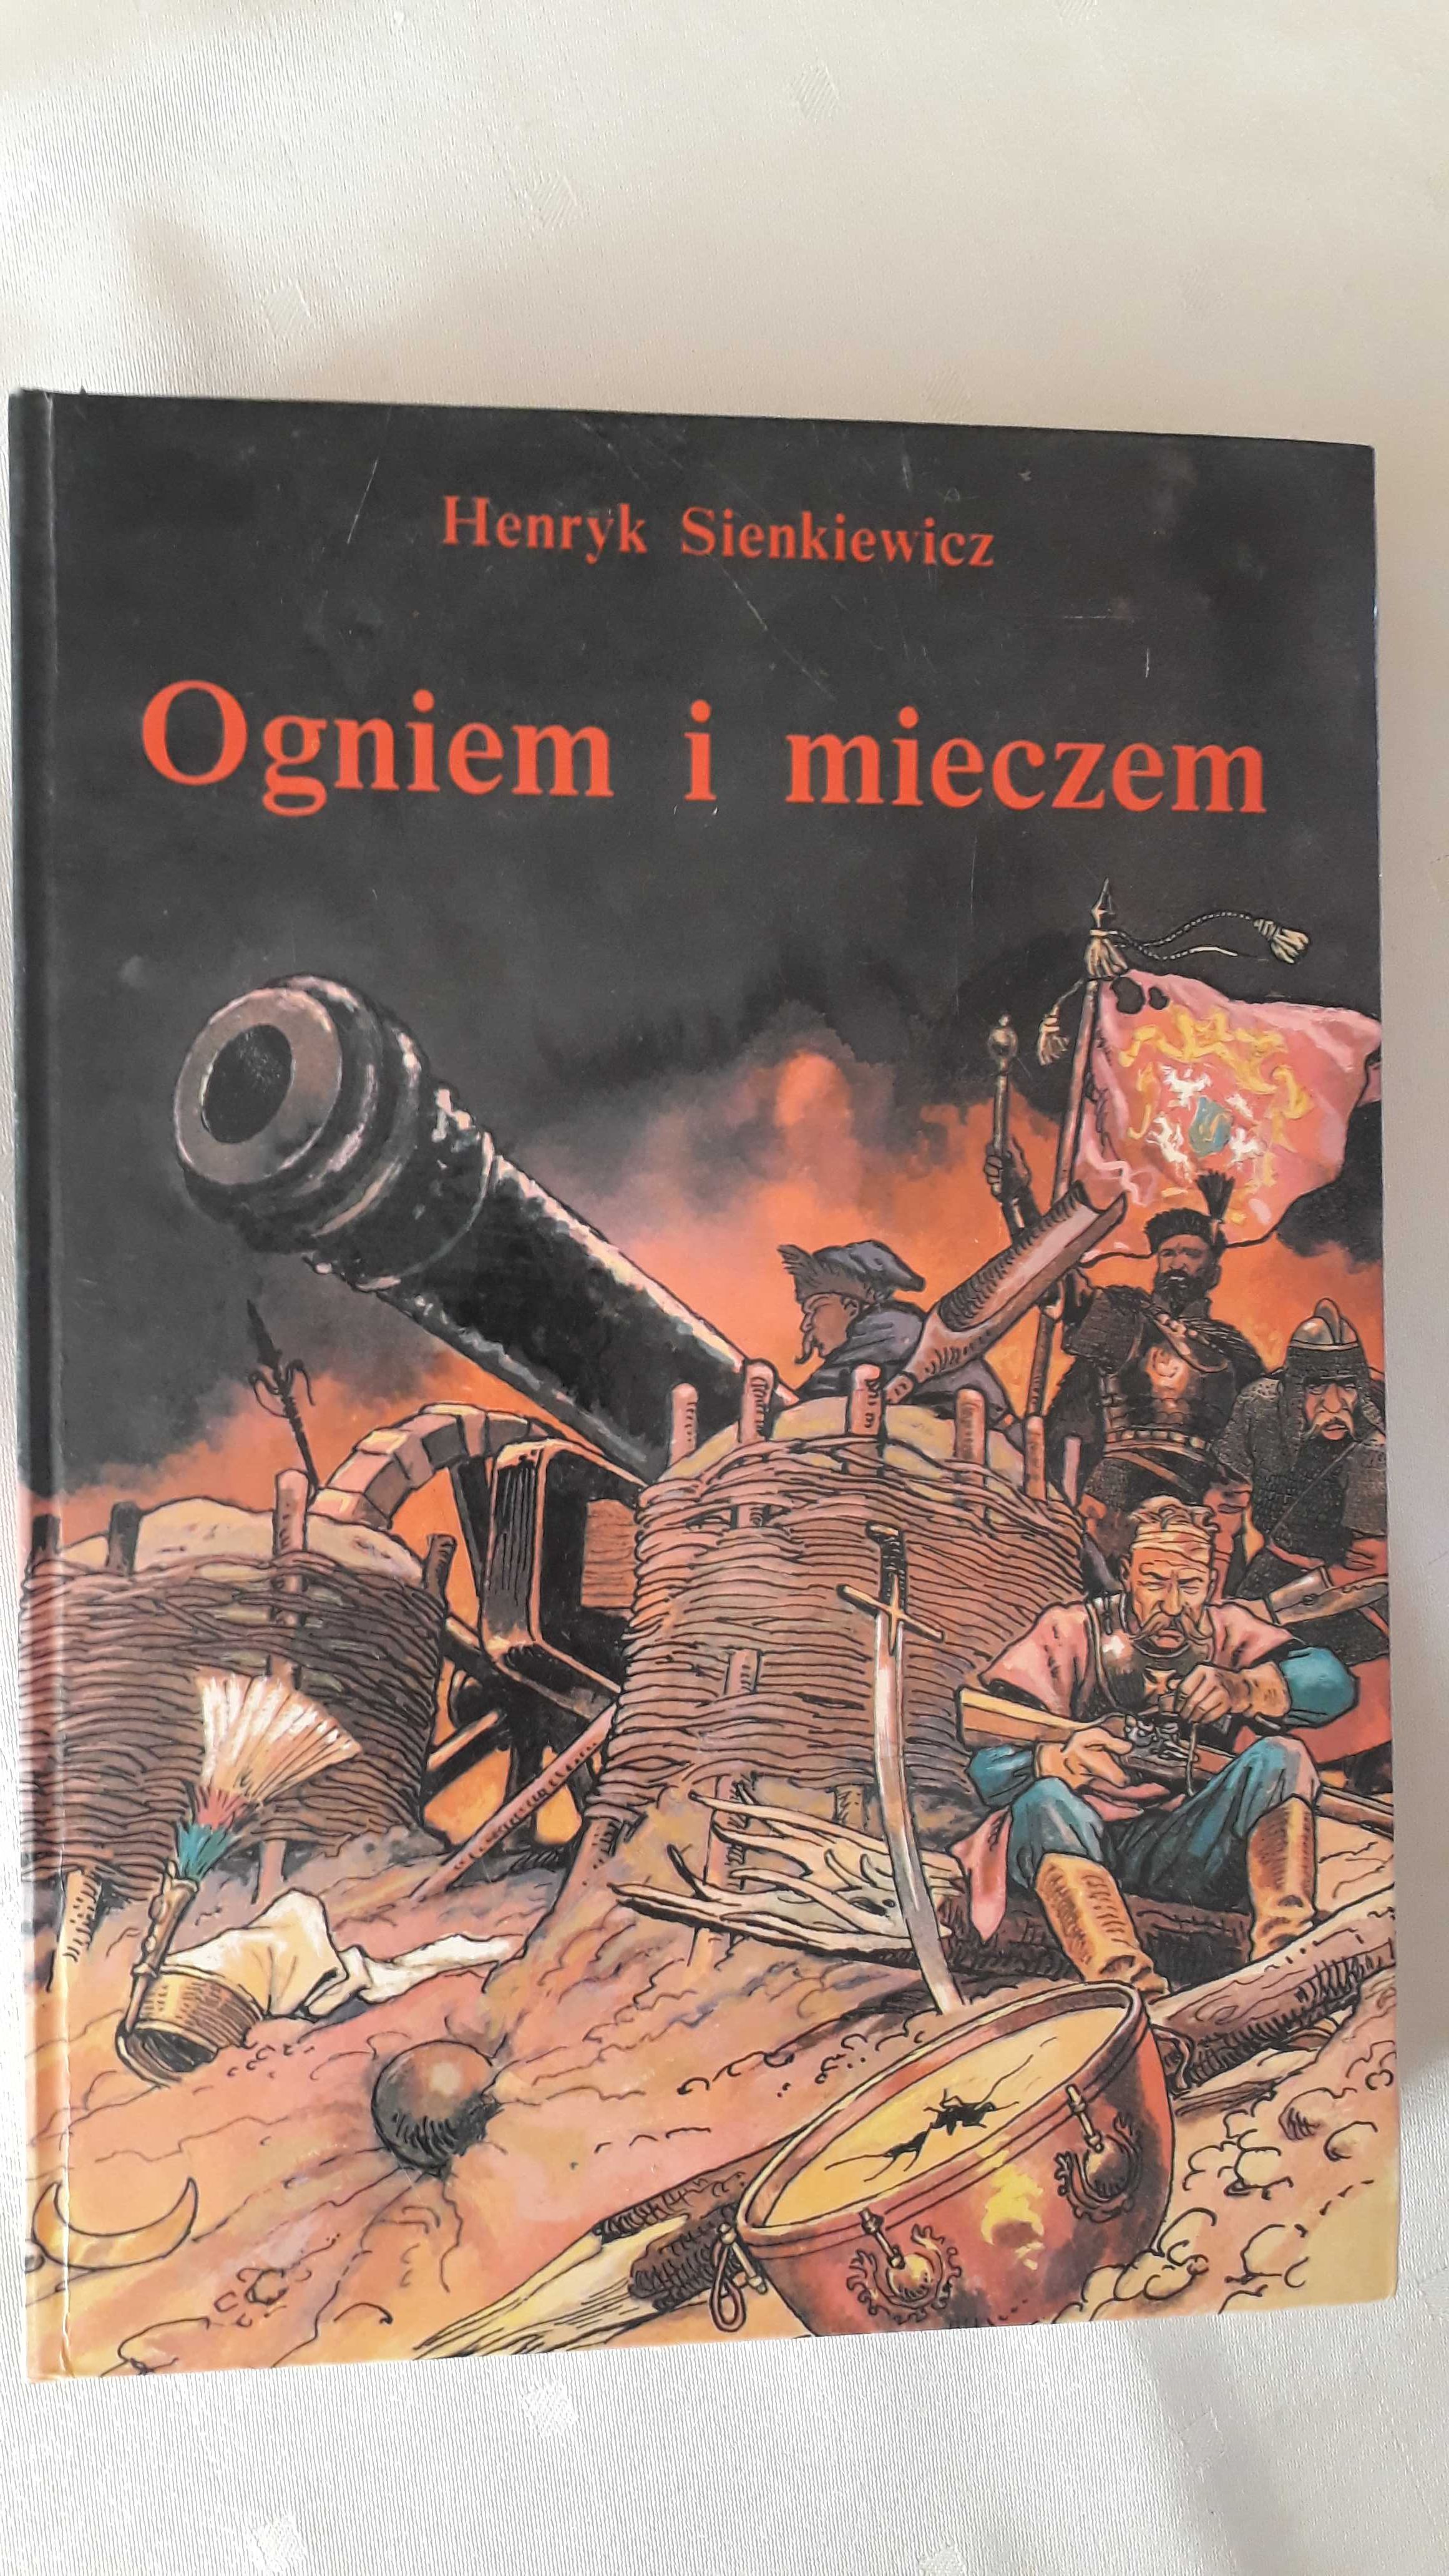 Ogniem i mieczem H. Sienkiewicza wydanie 1991. Książka w formacie A4